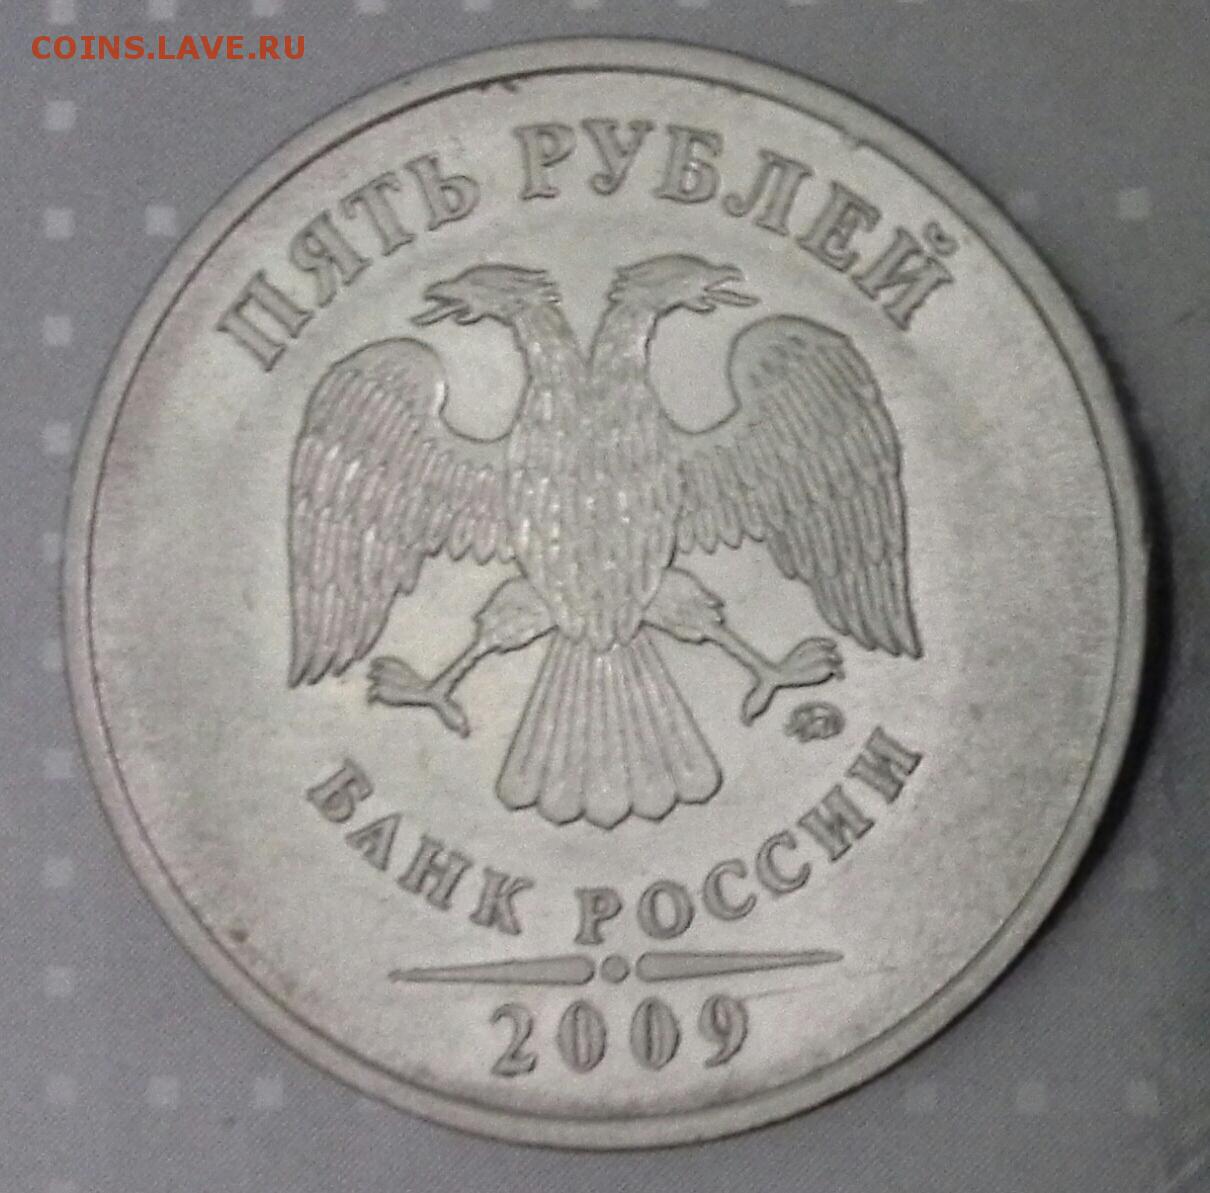 Сколько стоит монета 2009. 5 Рублей Санкт Петербургский монетный двор. 5 Рублей 2009 года СПМД. 5 Рублей 2009. 5 Руб 2009.